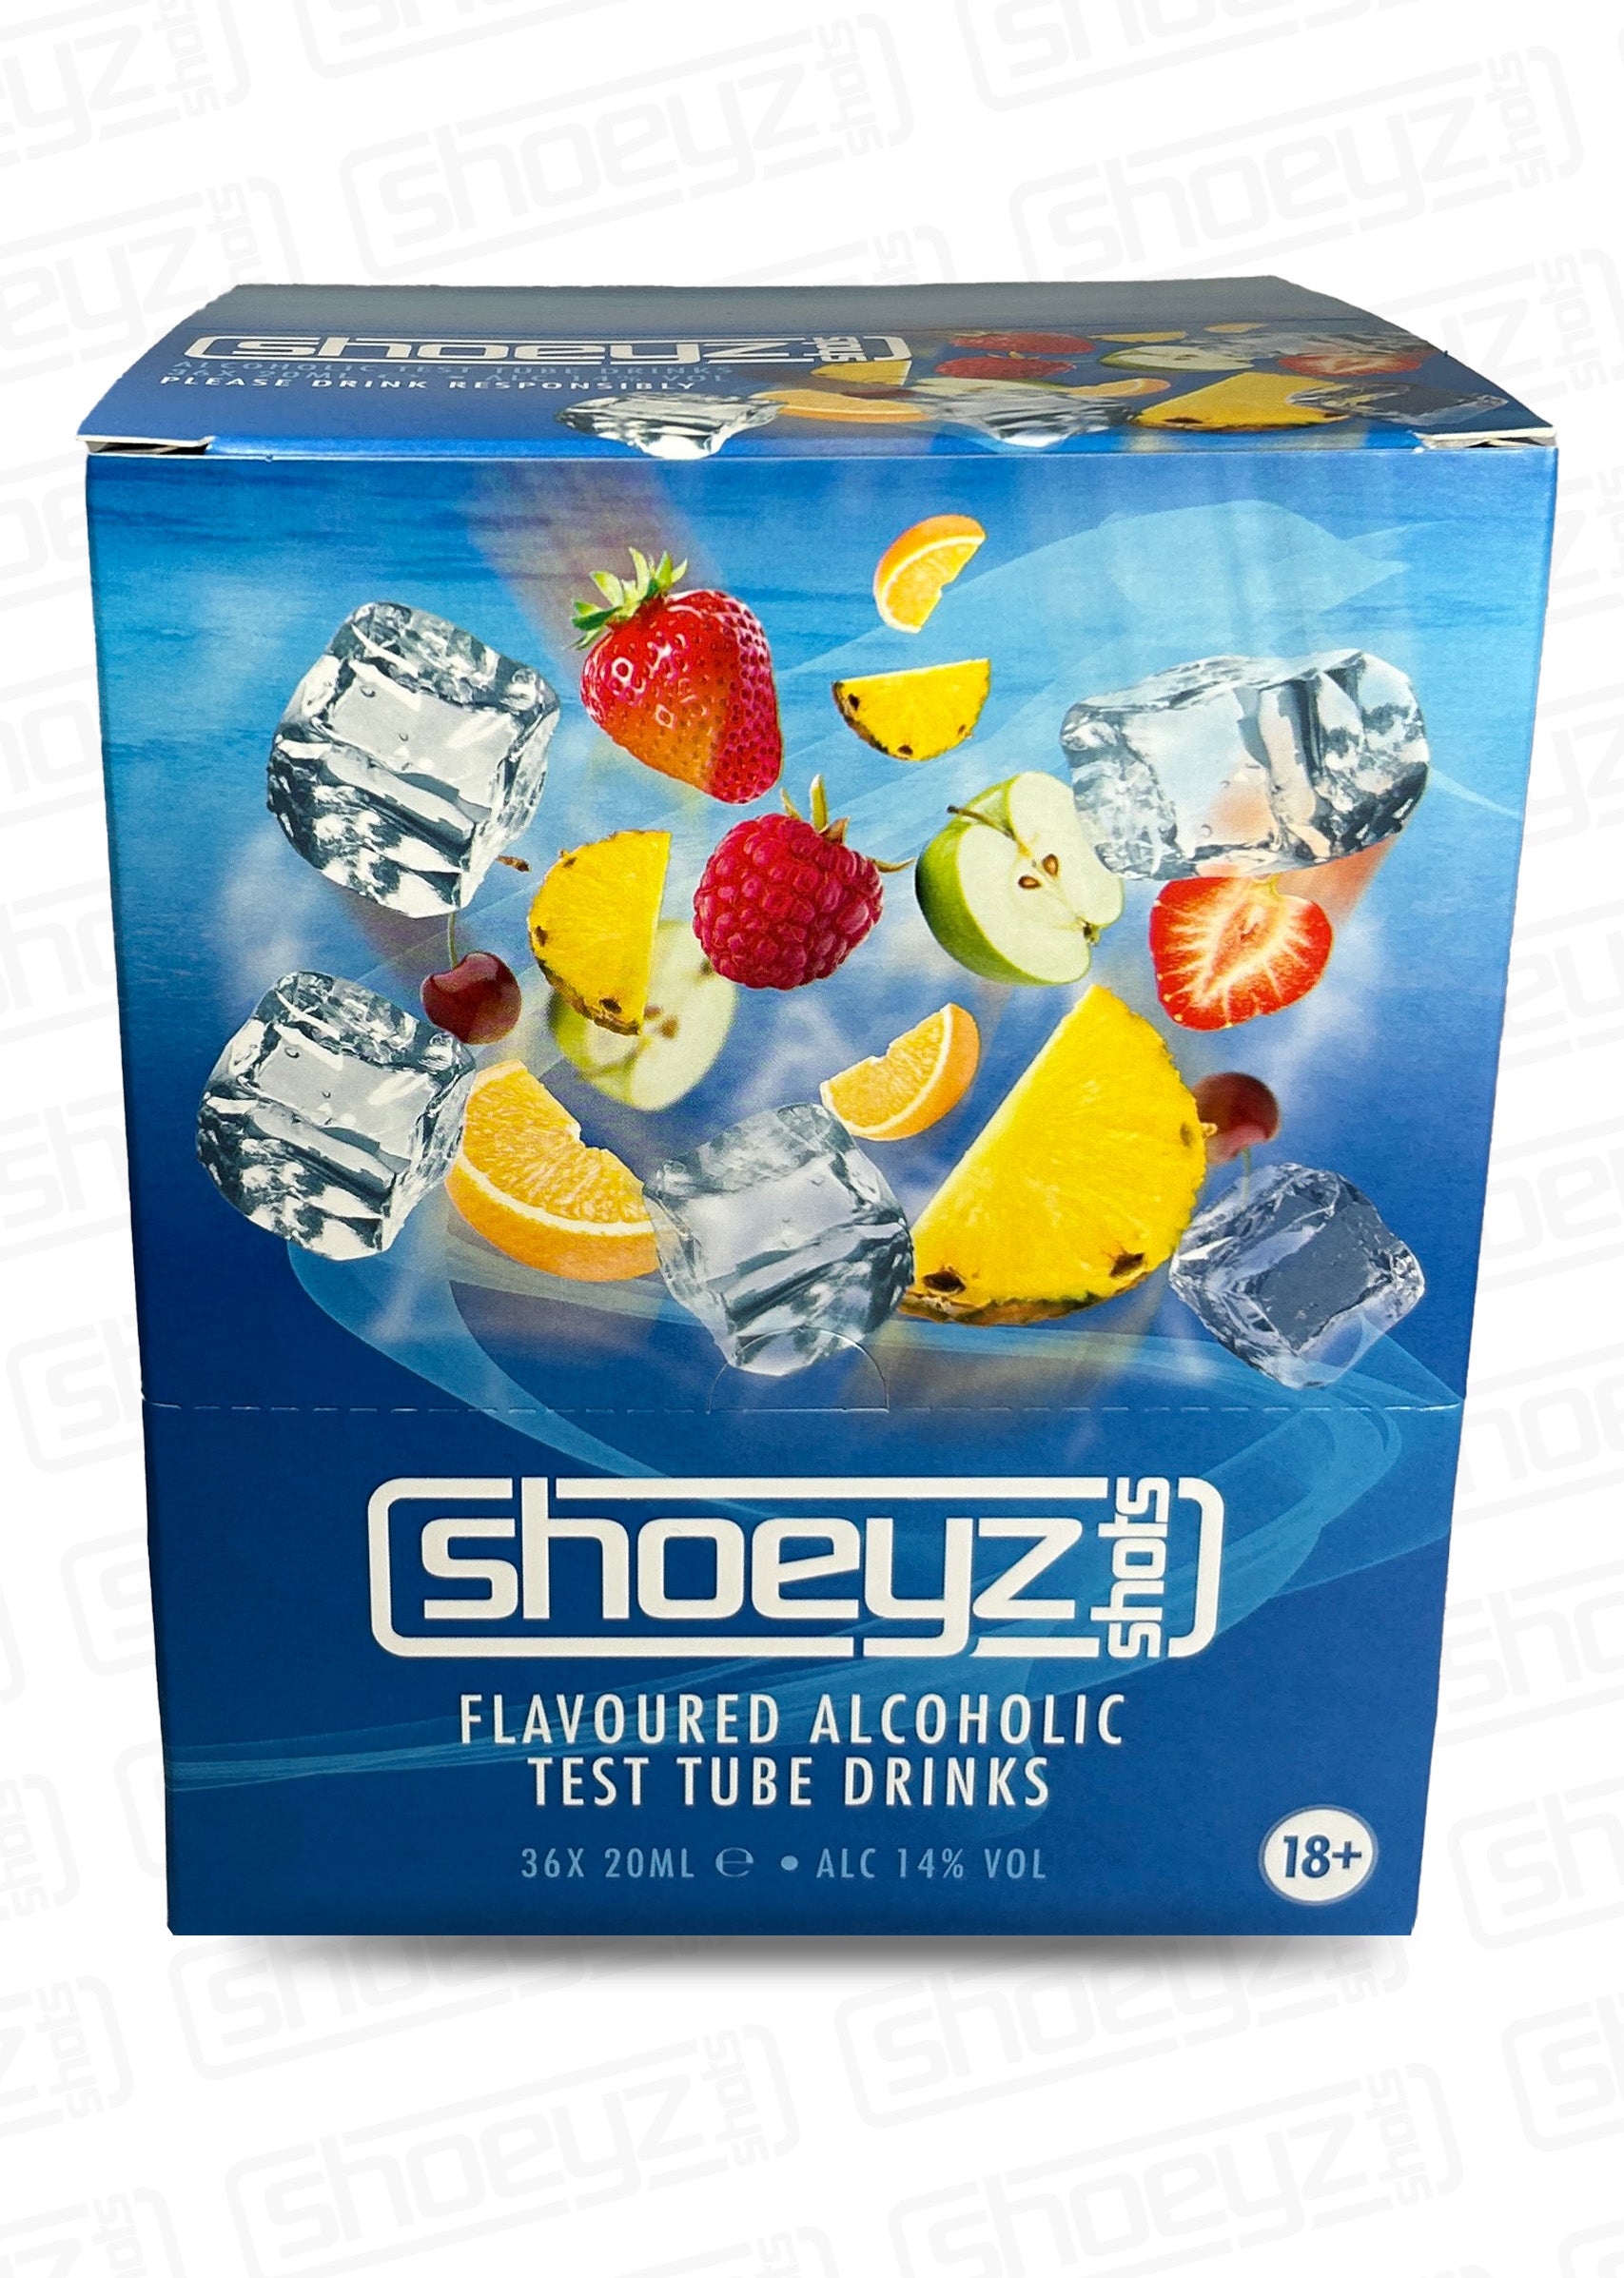 shoeyz vodka test tube shots mixed fruit front case